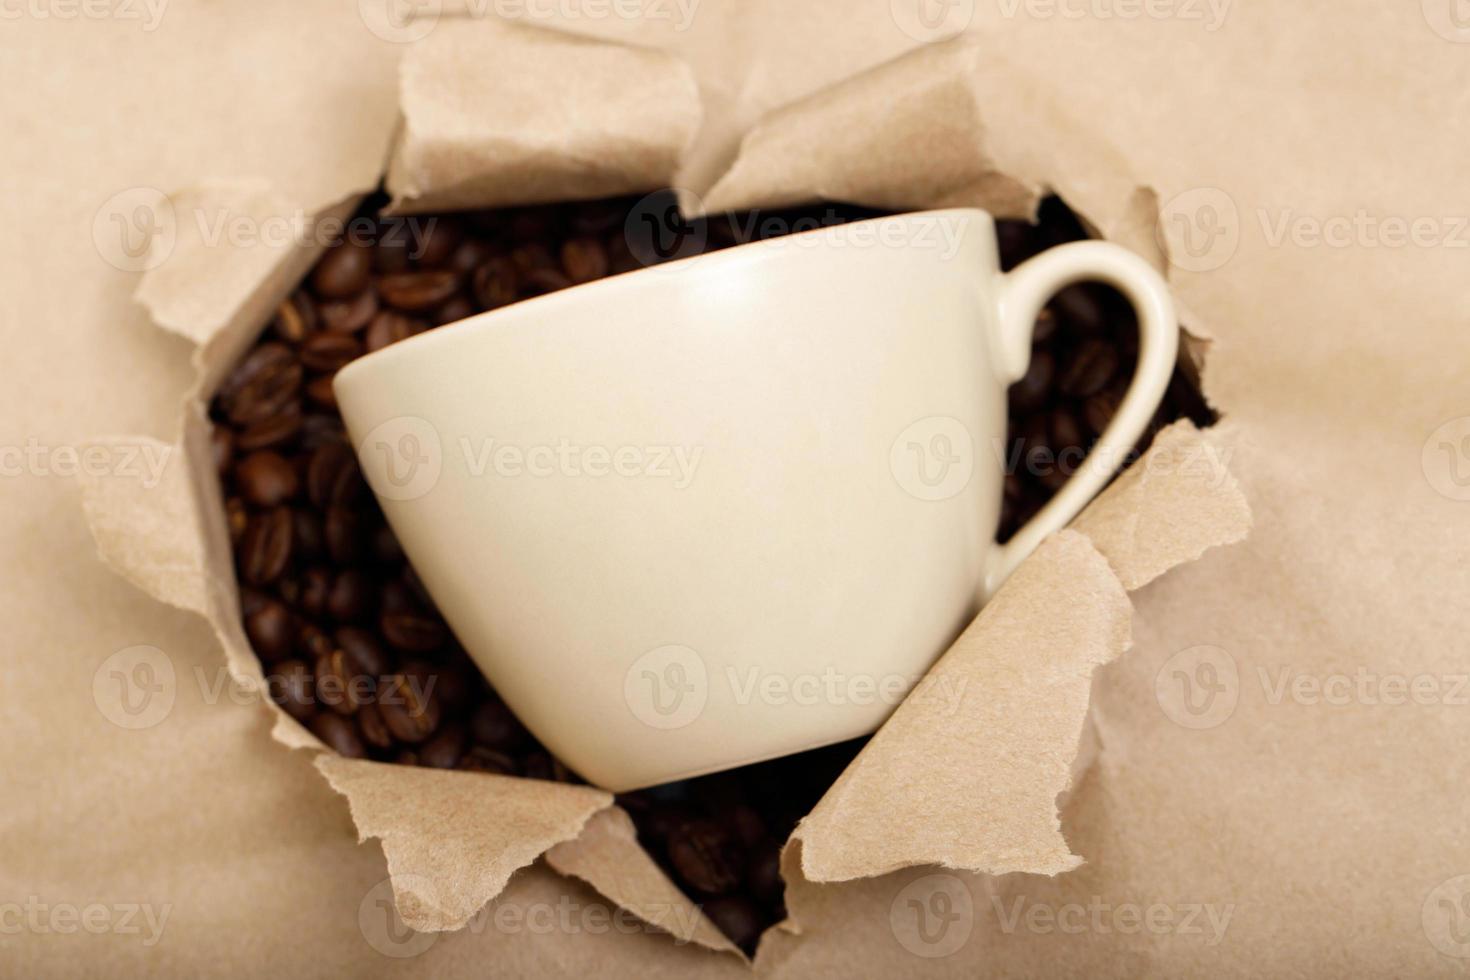 fraîchement rôti café des haricots dans une tasse photo